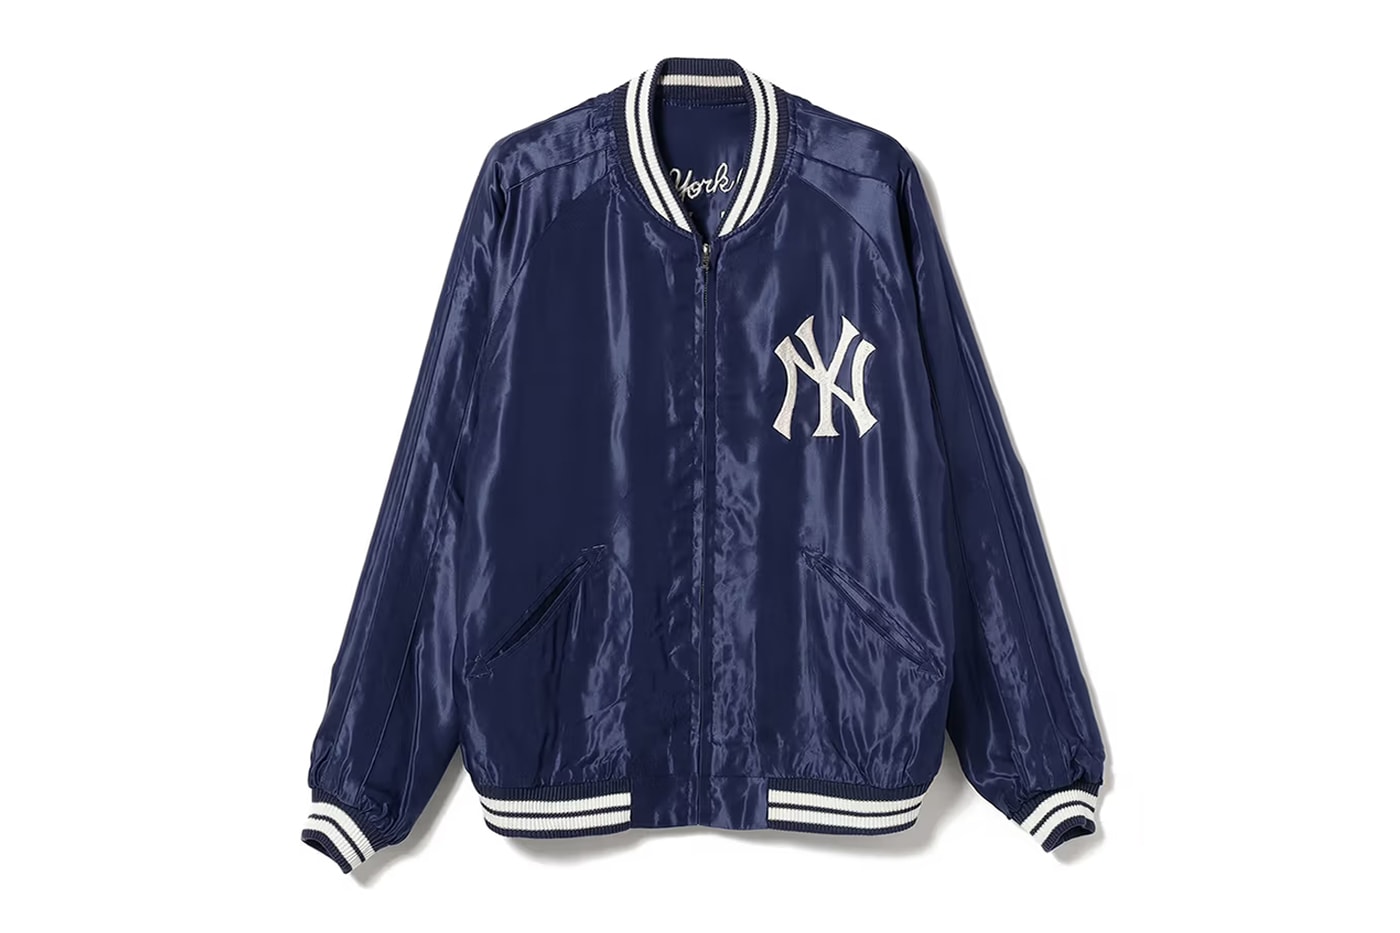 BEAMS Tailor Toyo MLB Sukajan Jacket Release Info Date Buy Price New York Yankees Los Angeles Dodgers New York Mets